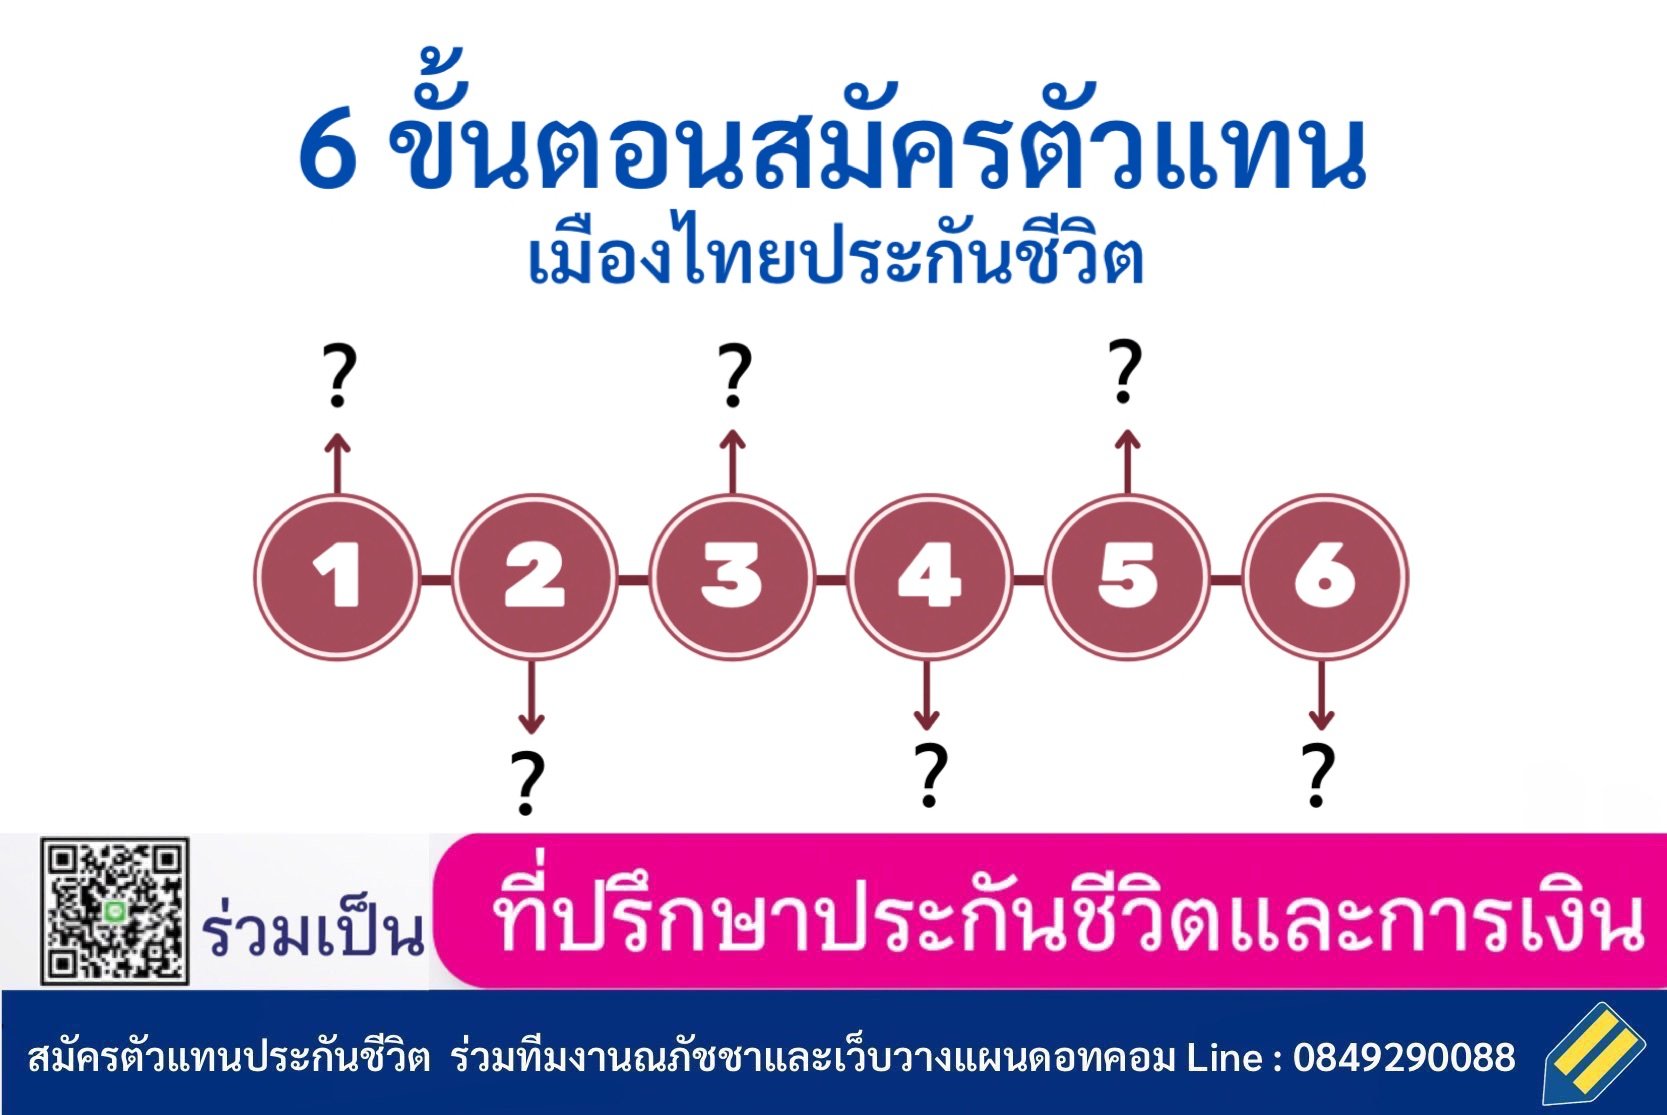 6 ขั้นตอน สมัครตัวแทนเมืองไทยประกันชีวิต ร่วมเป็นที่ปรึกษาประกันชีวิตและการเงินกับทีมวางแผนดอทคอม